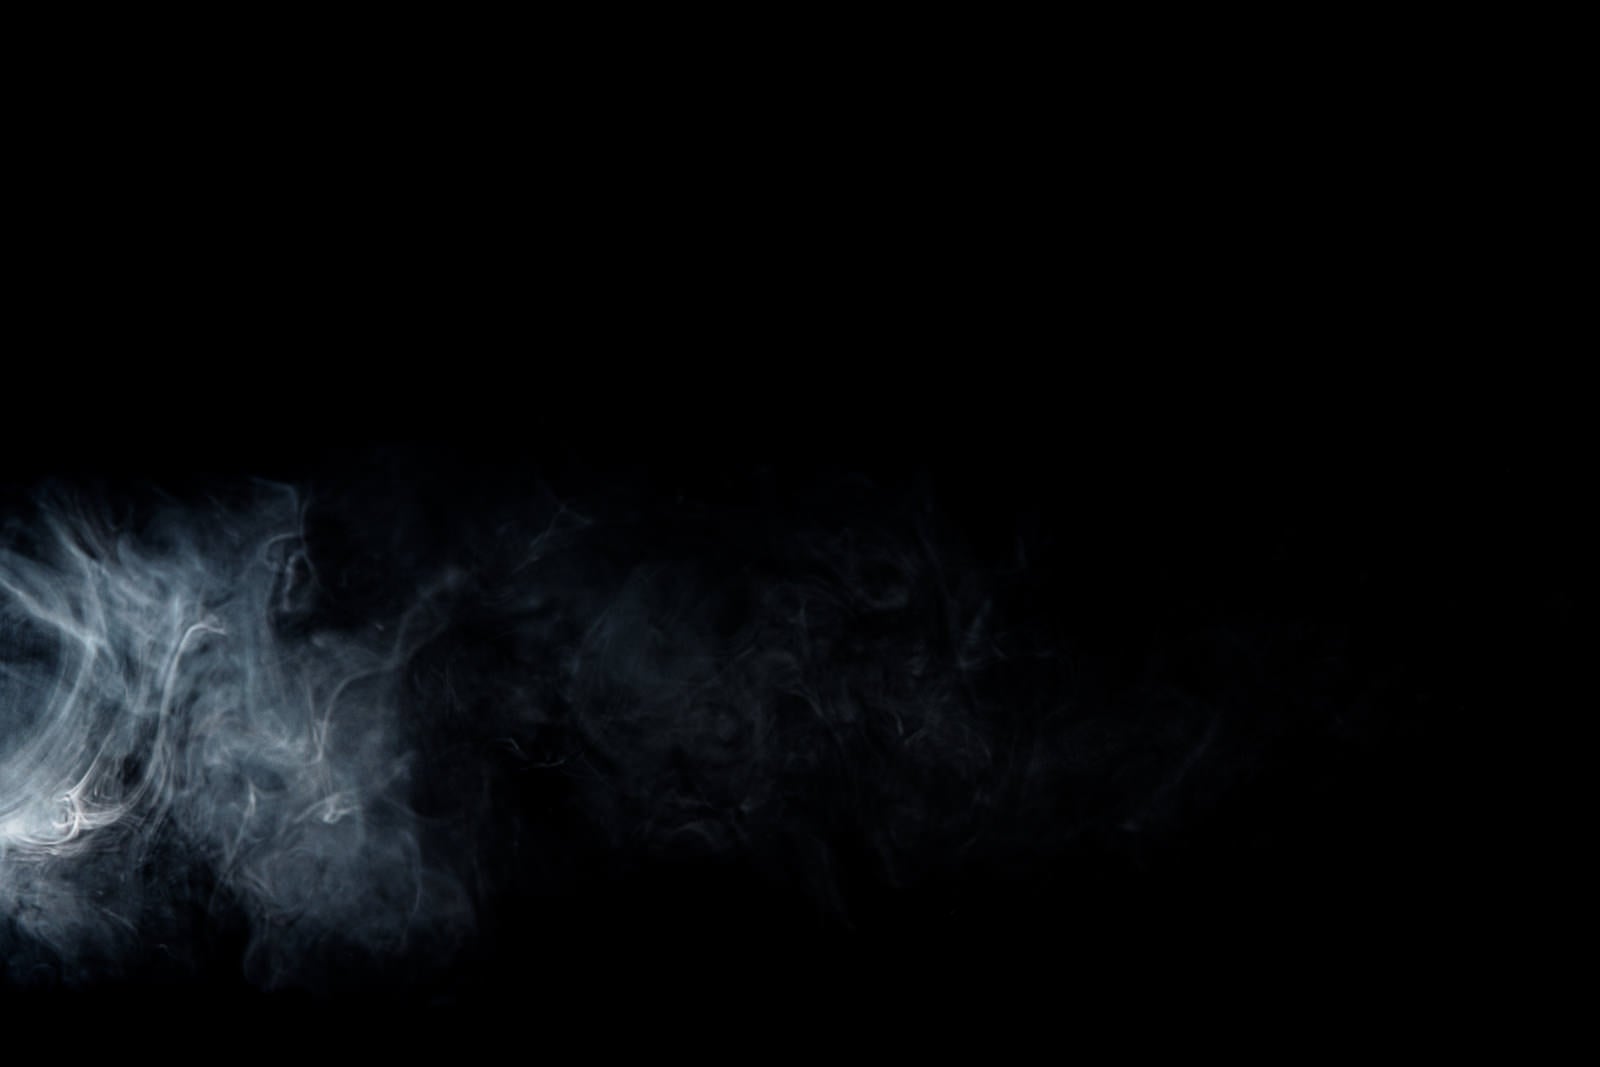 「ポワンっと噴出された白い煙」の写真